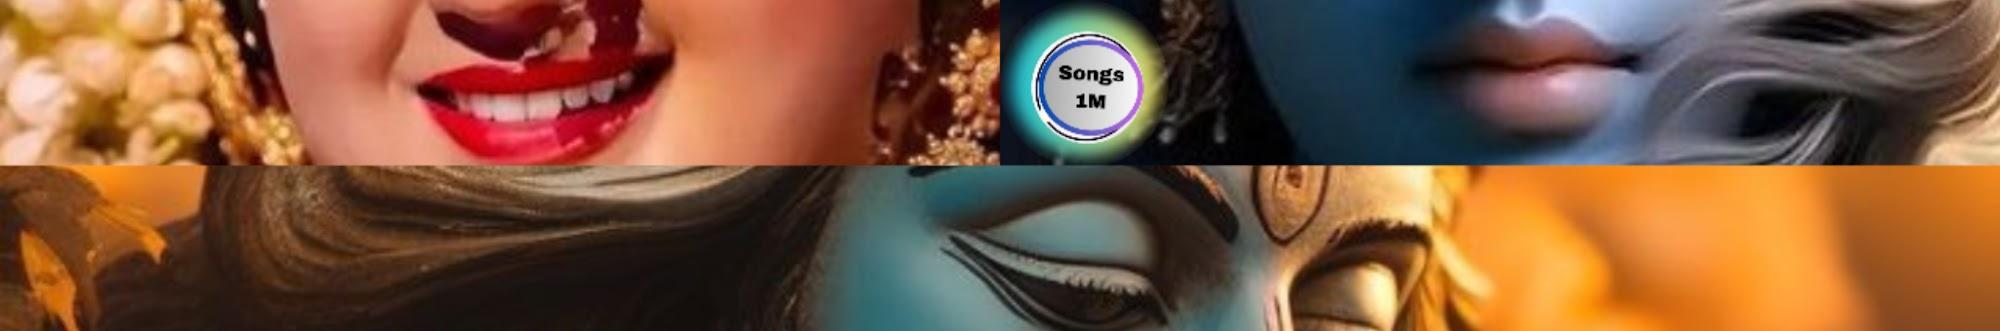 Songs 1M